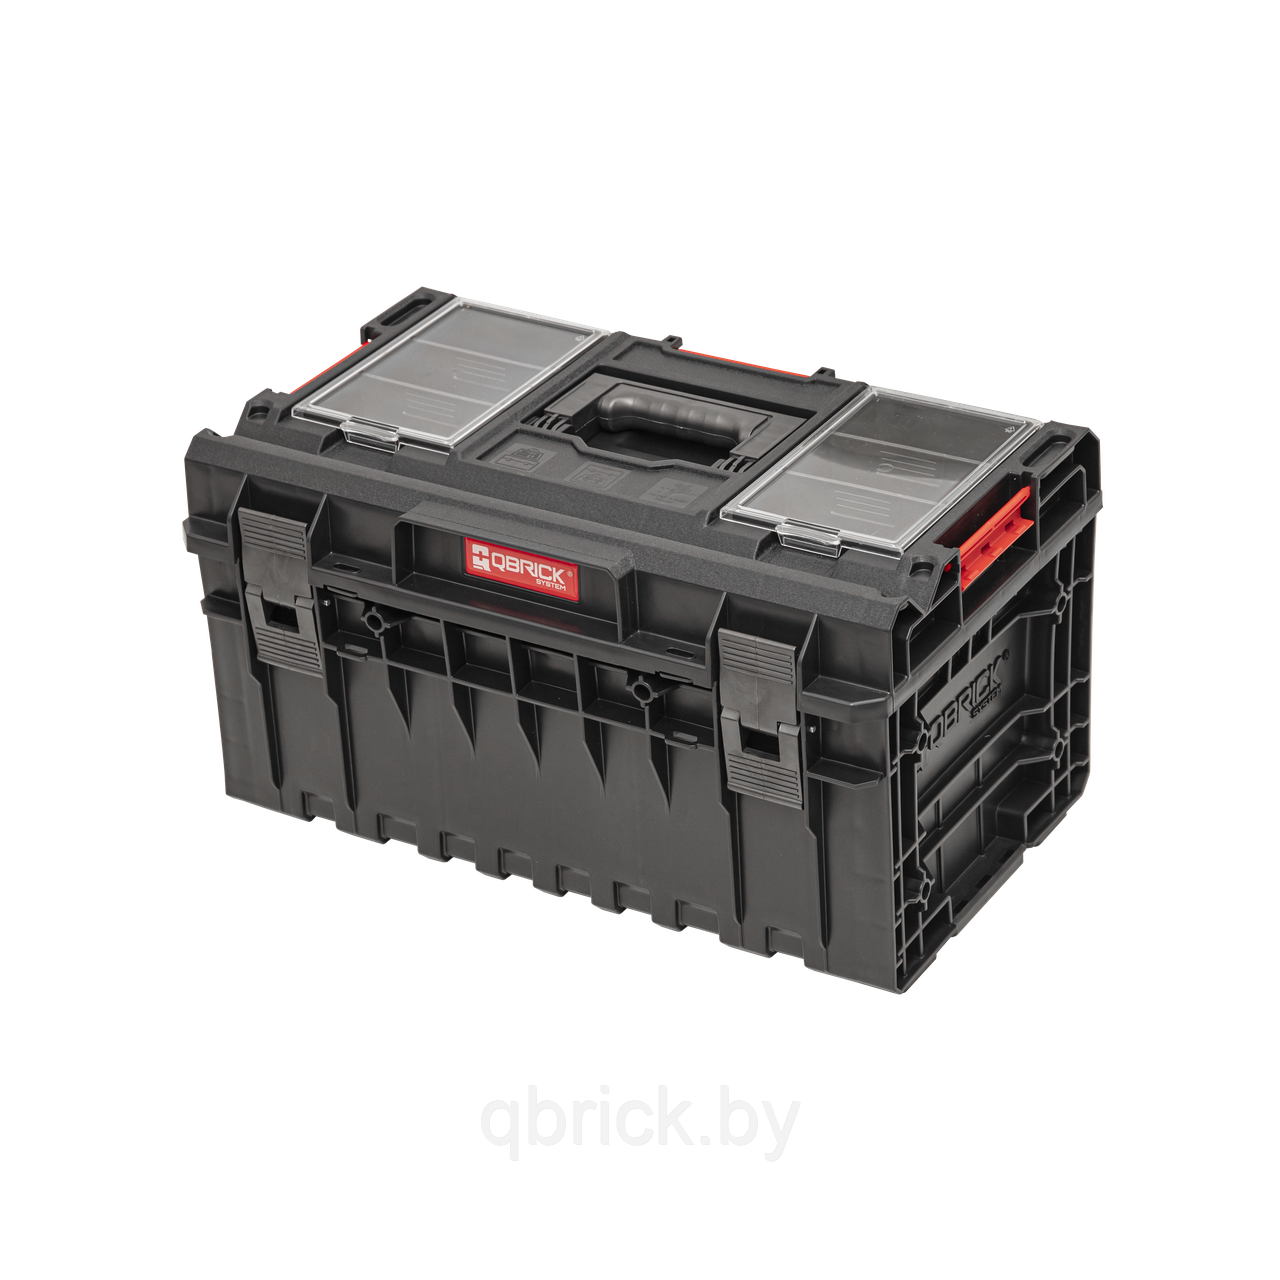 Ящик для инструментов Qbrick System ONE 350 Profi 2.0, черный